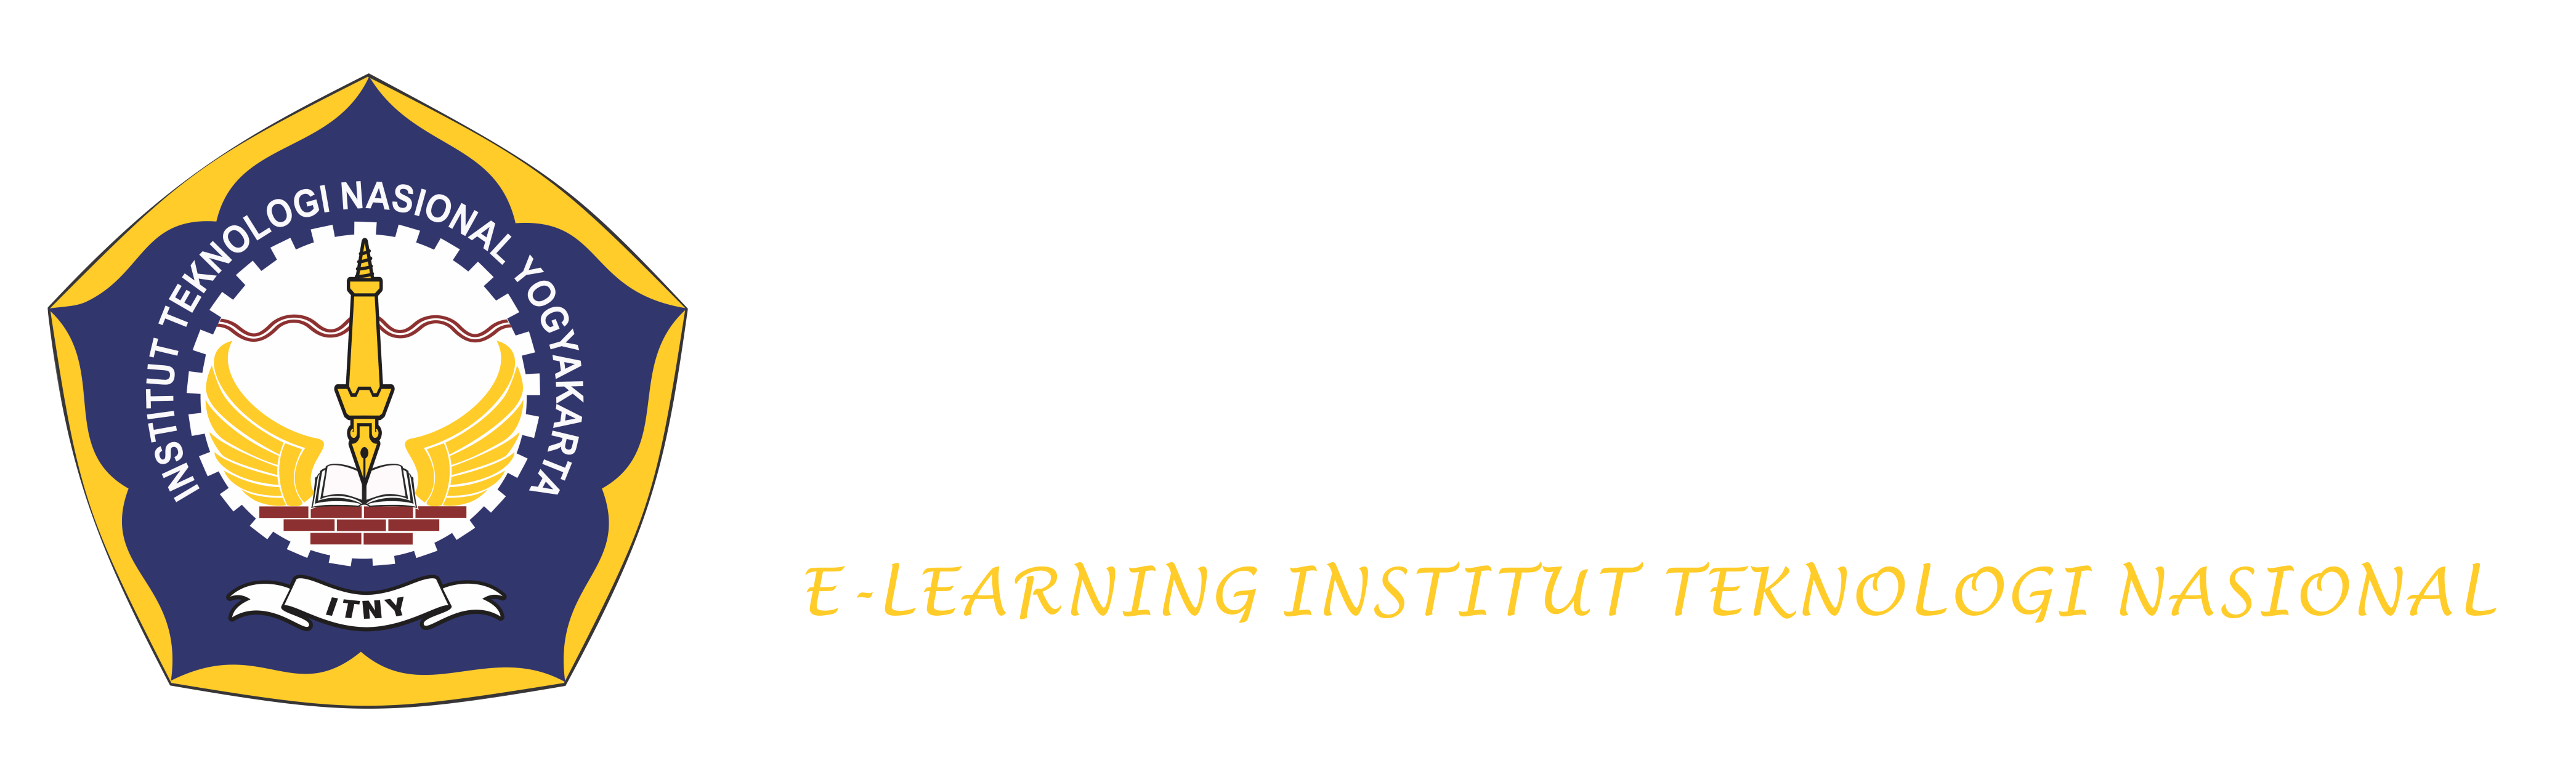 Elinas E Learning Institut Teknologi Nasional Yogyakarta